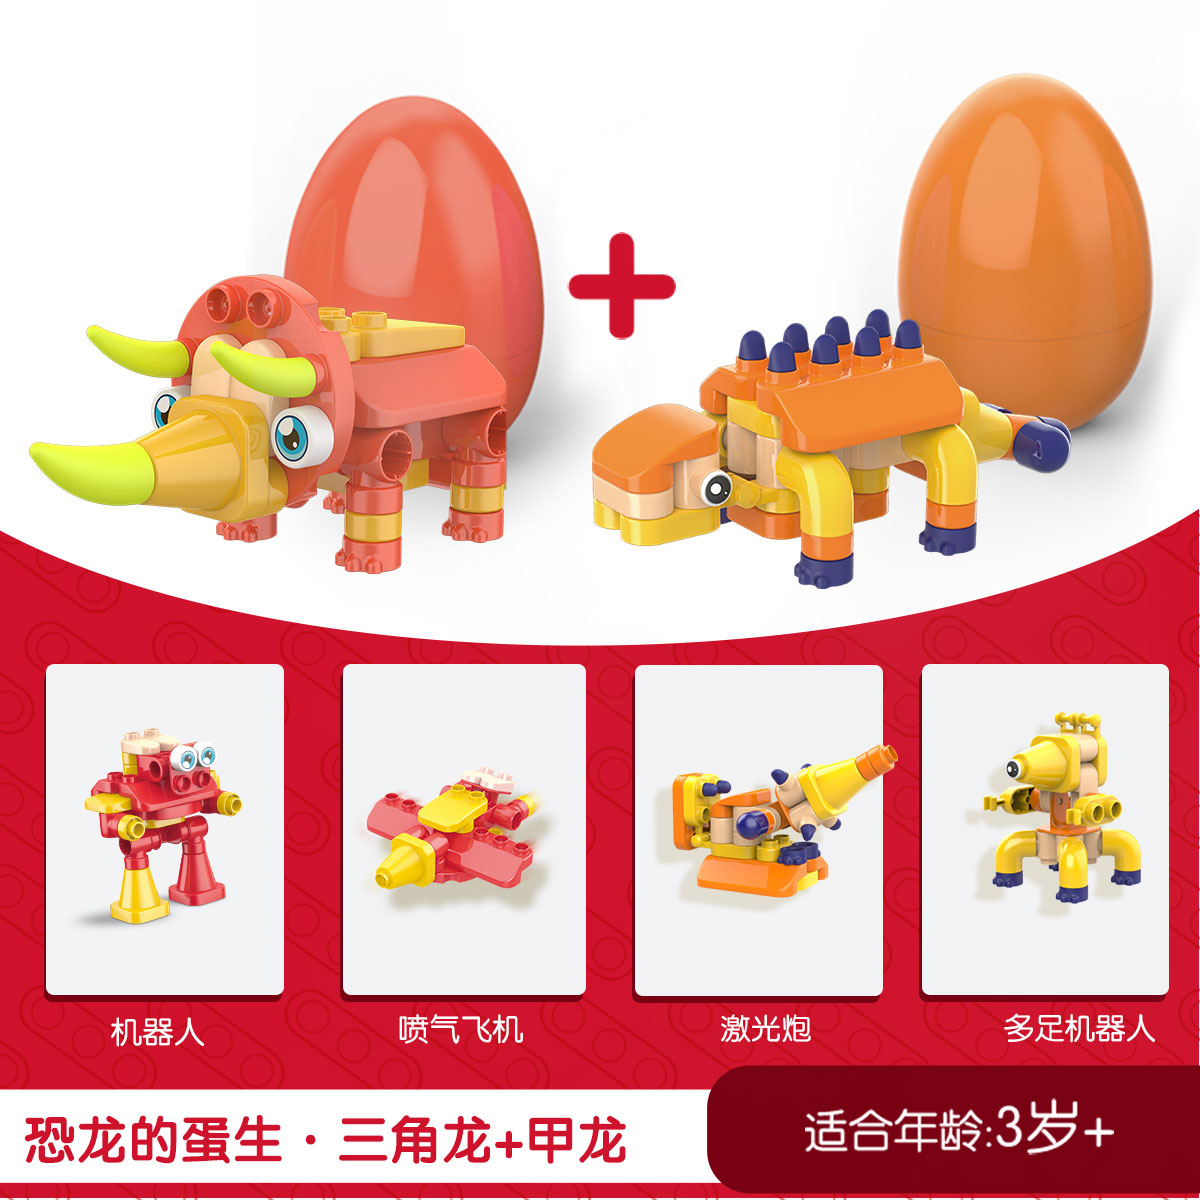 布魯可恐龍蛋2件裝大顆粒積木玩具拼裝益智兒童男女孩DIY禮物3歲+